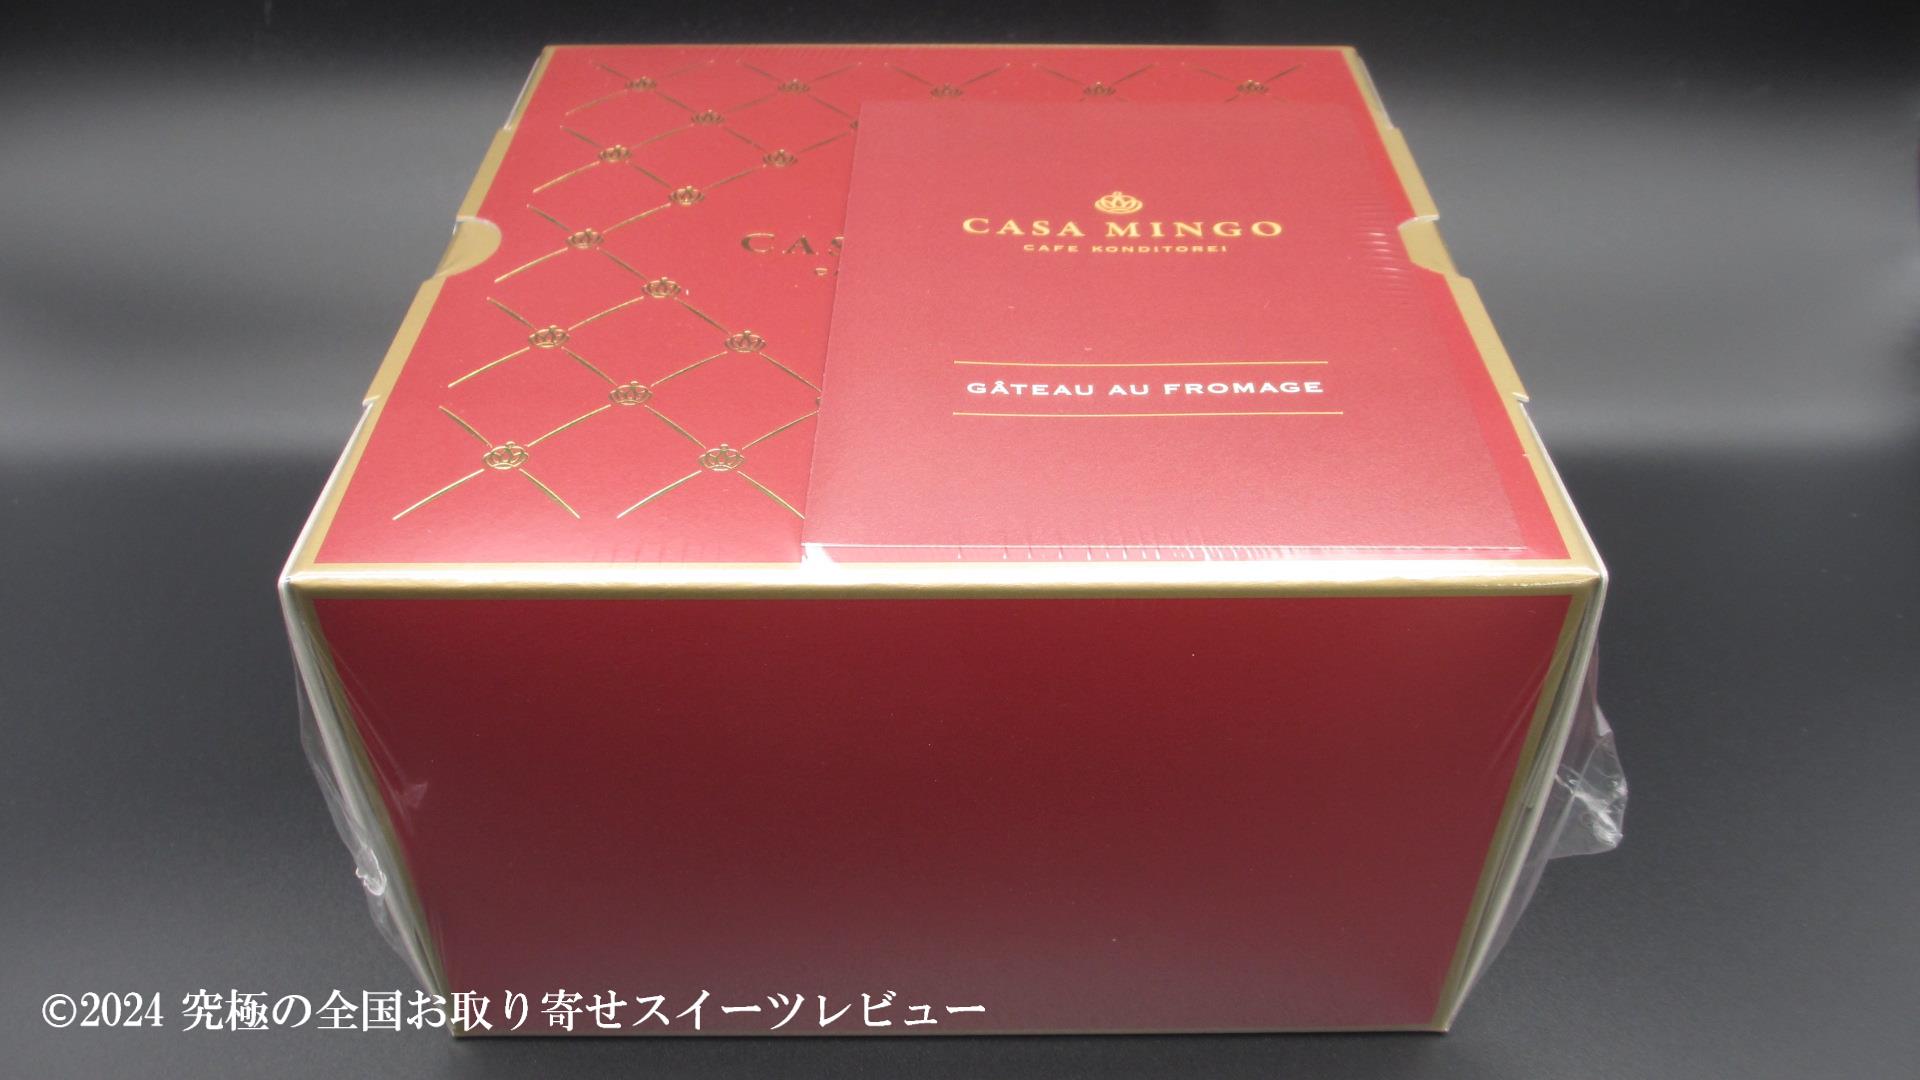 シュス木苺レアチーズケーキ（洋菓子店カサミンゴー）の化粧箱の画像